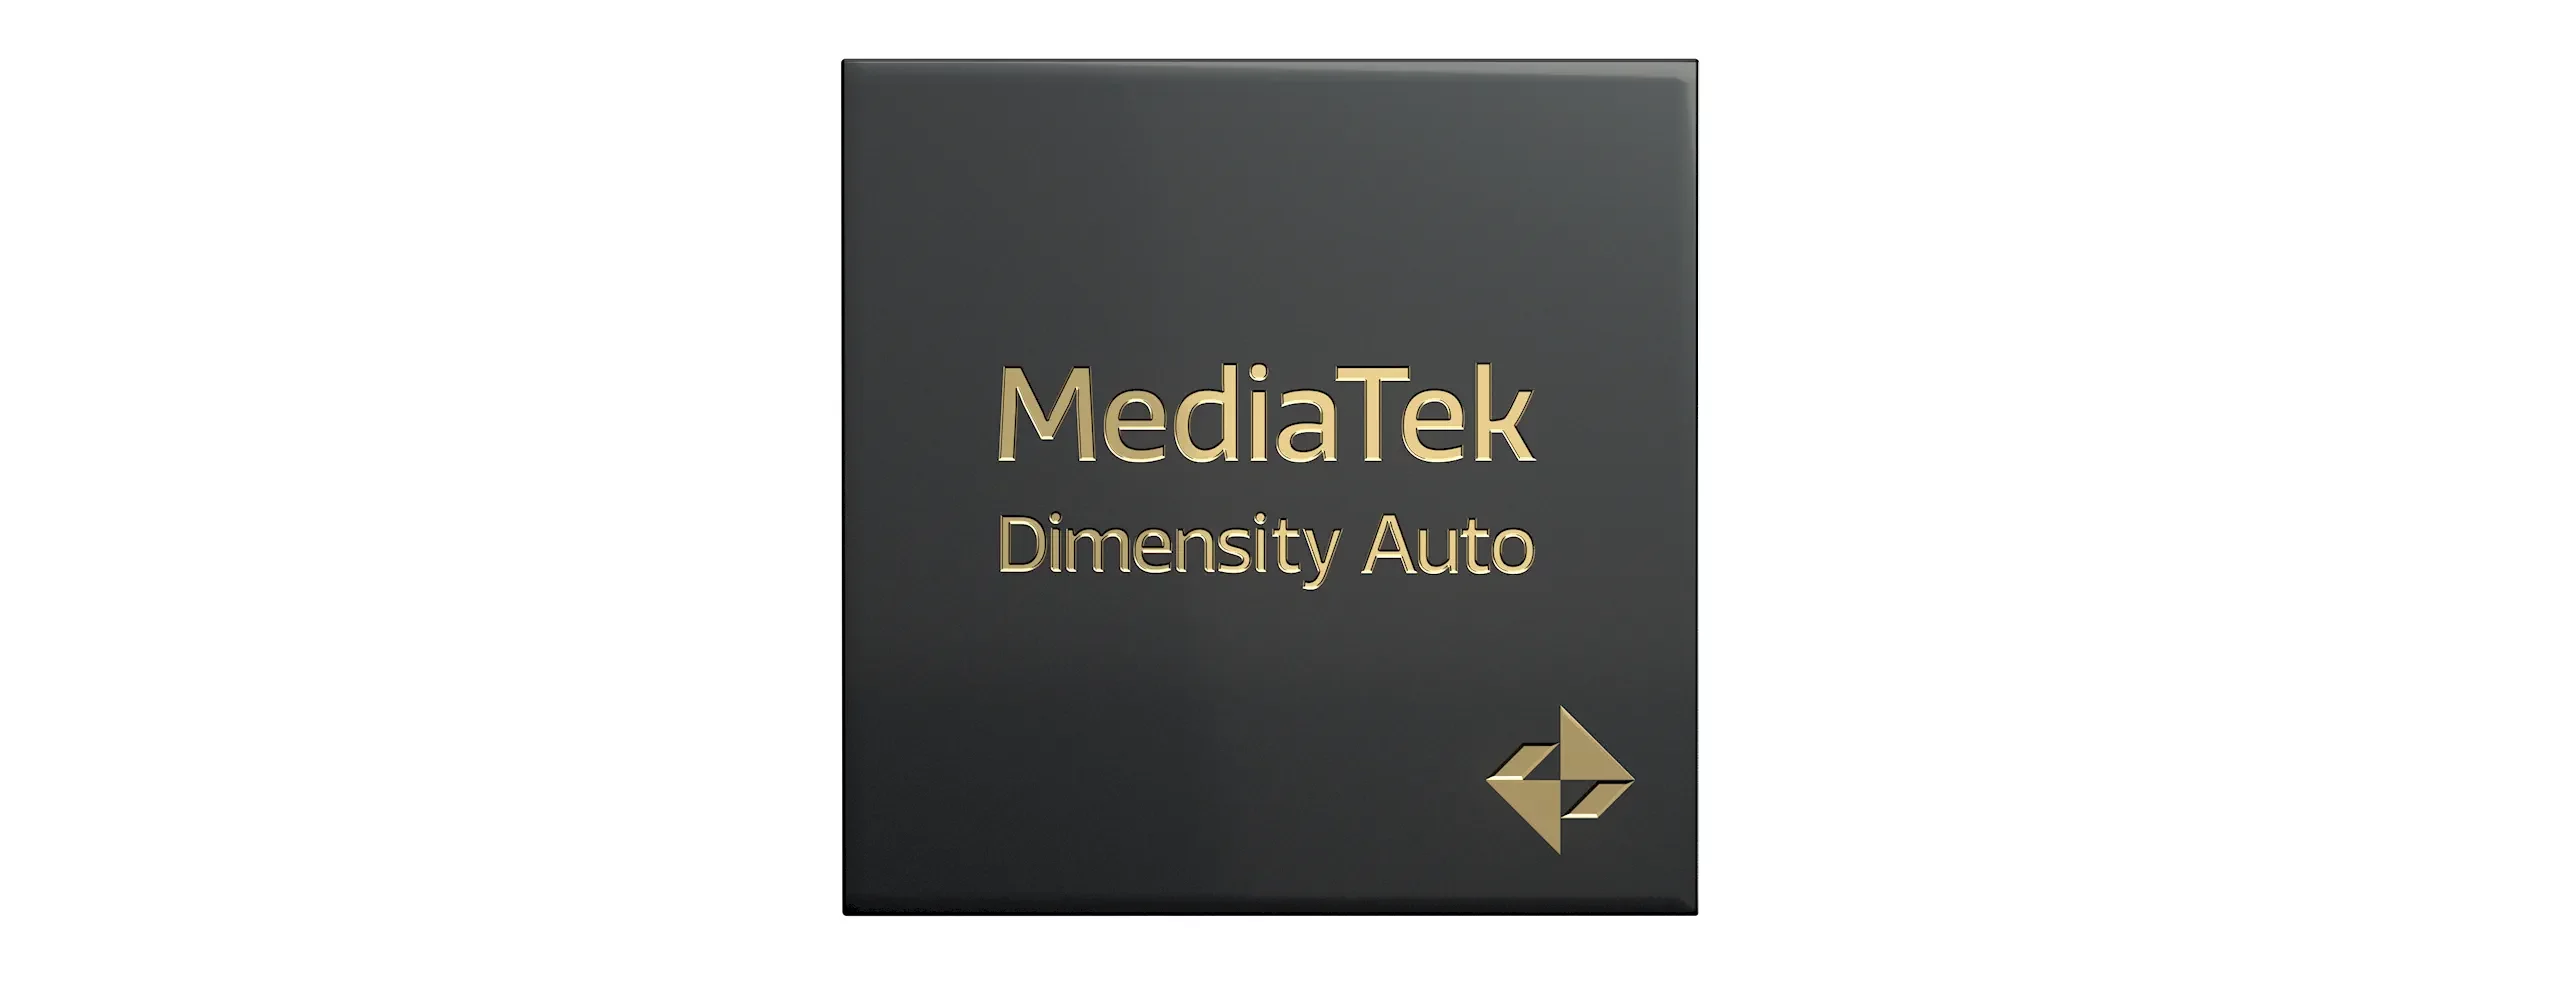 Mediatek giới thiệu Dimensity Auto, trang bị công nghệ đổi mới cho phương tiện thông minh